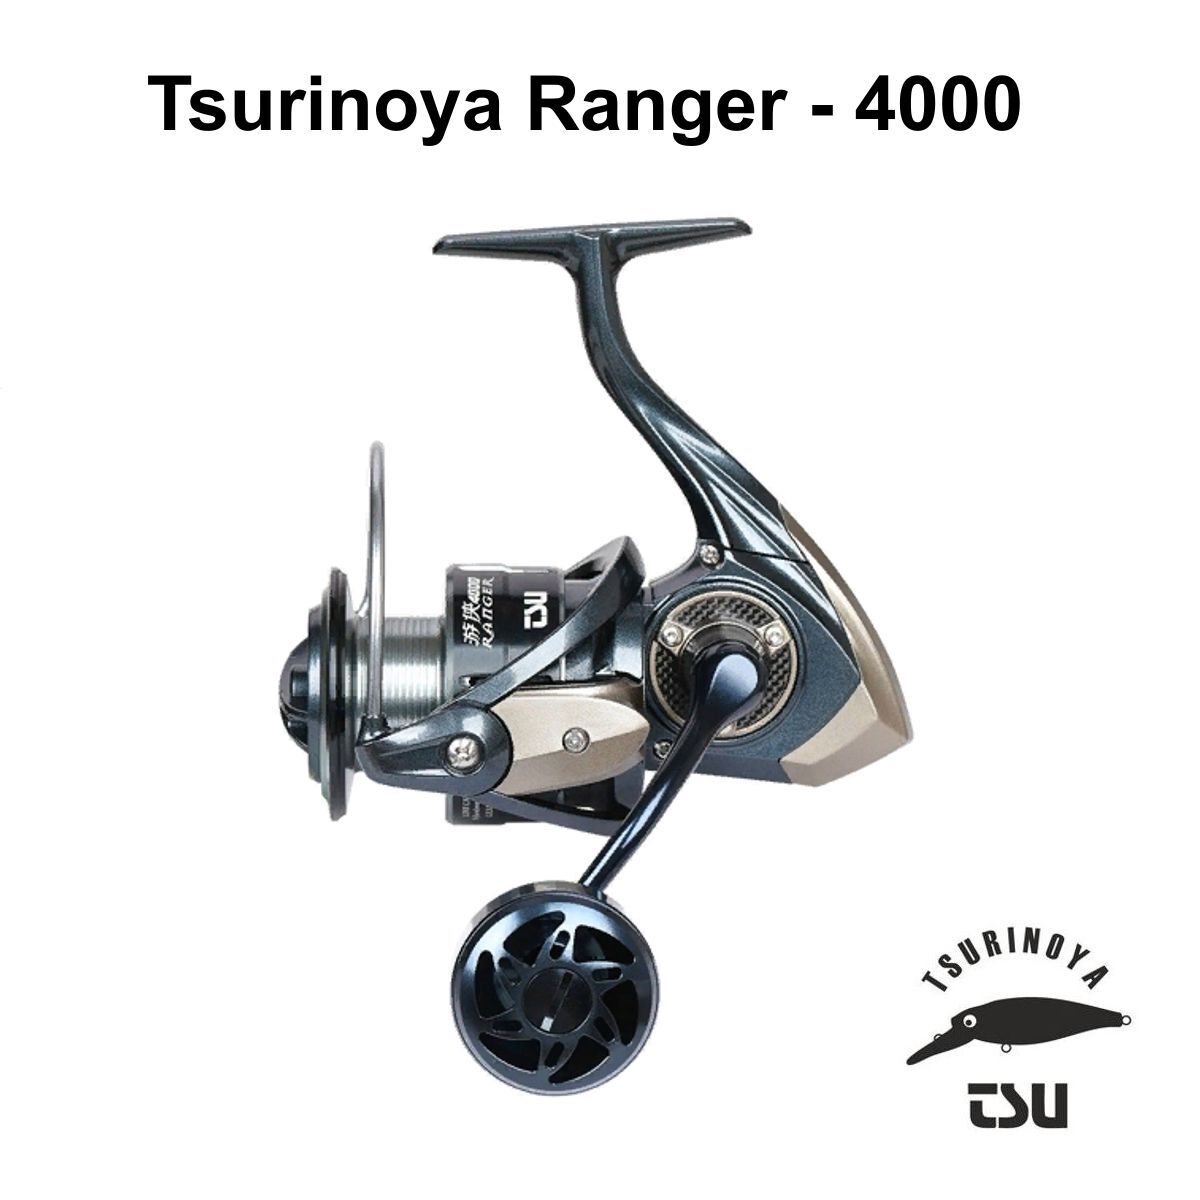 Tsurinoya Ranger (2000S - 4000)